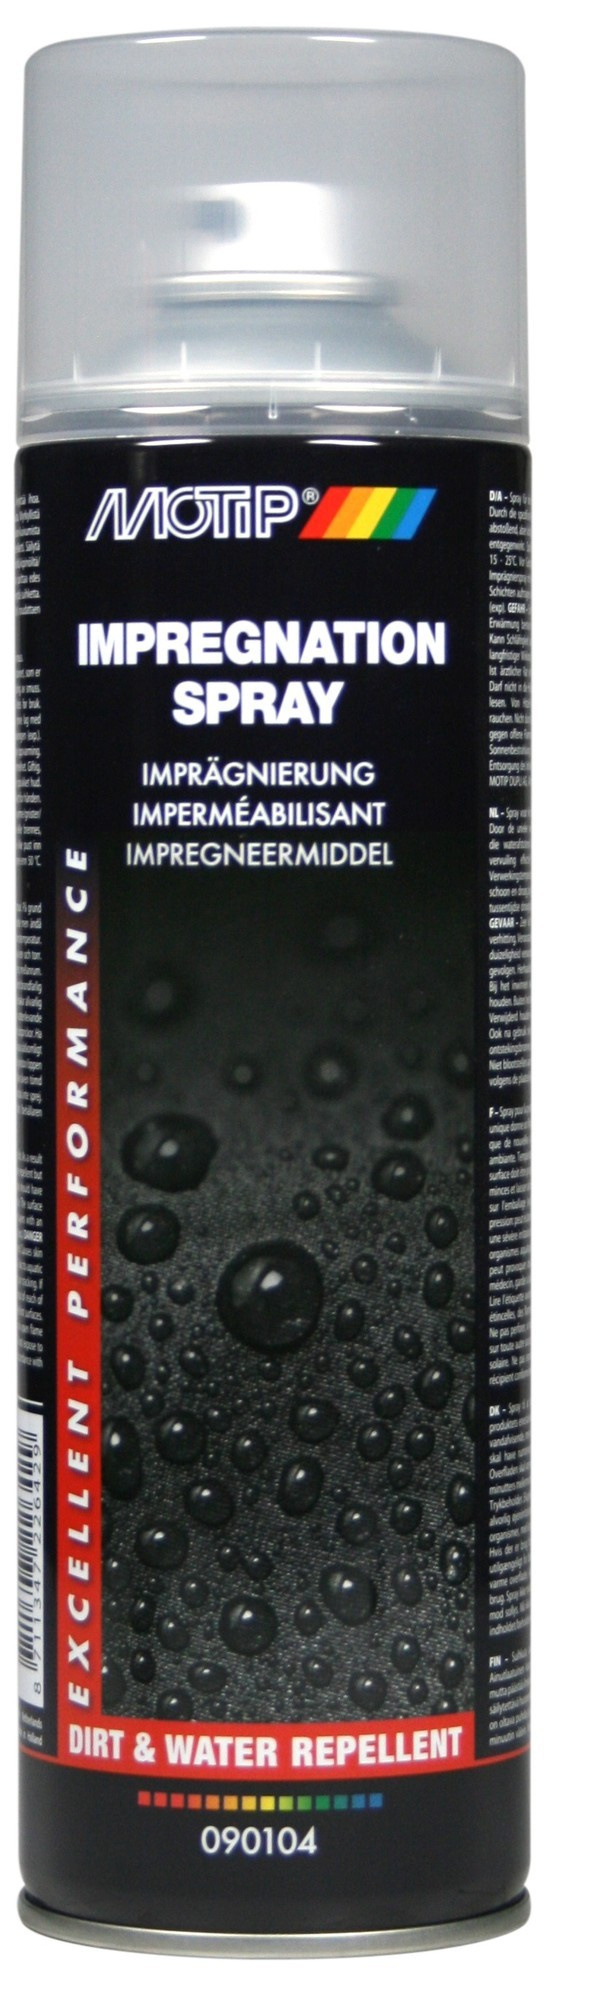 Imperméabilisant - Spray d'imprégnation